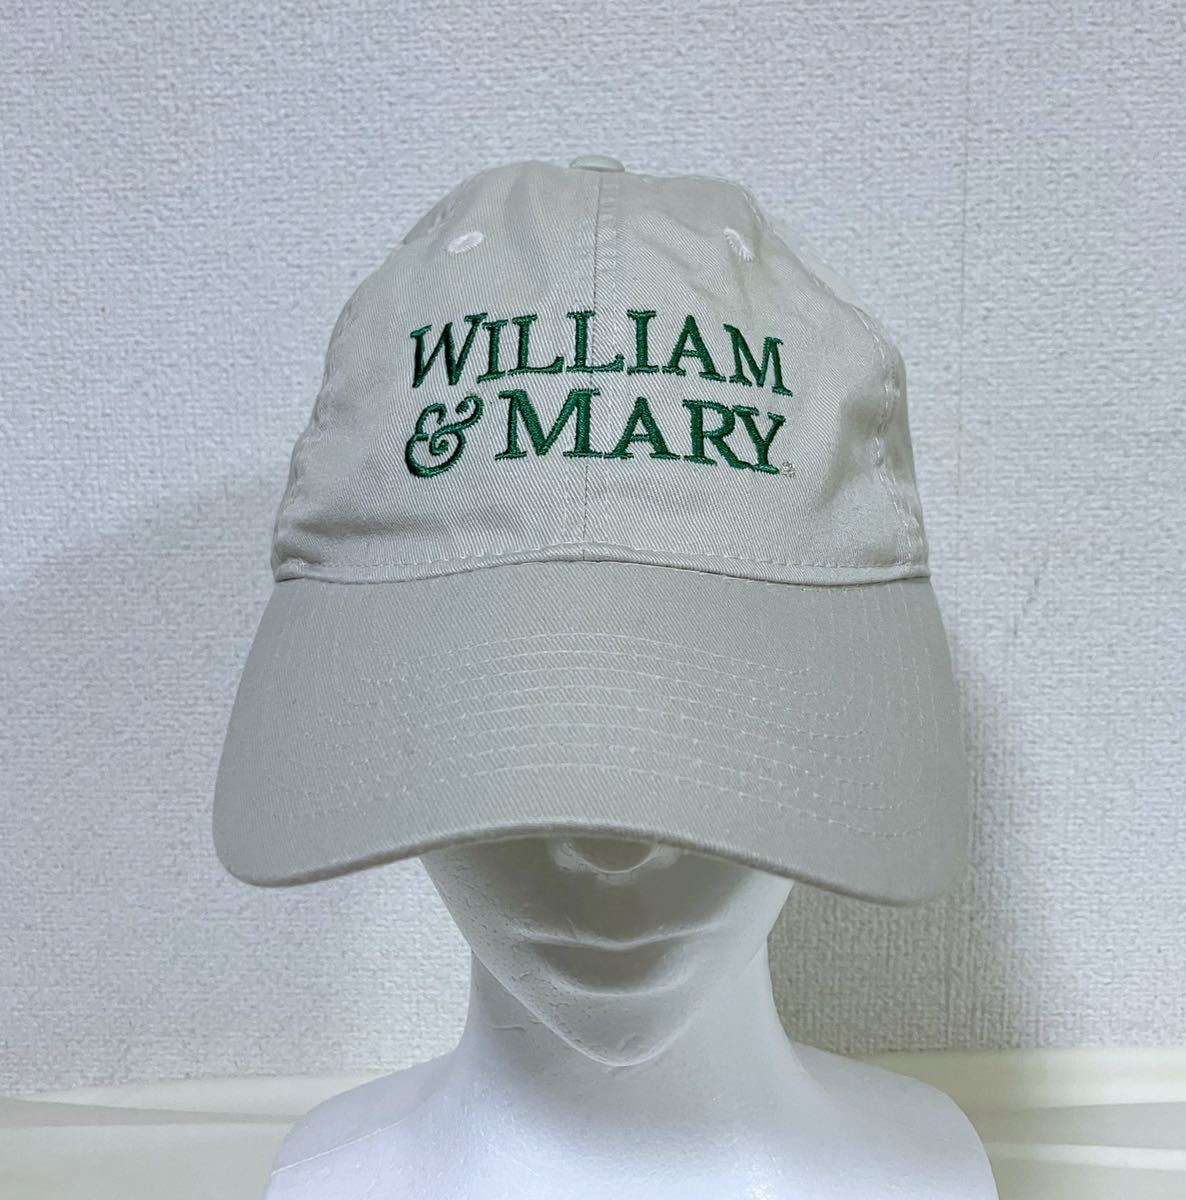 College of William & Mary ウィリアム アンド メアリー大学 コットンキャップ W&M 帽子 カレッジキャップ_画像2